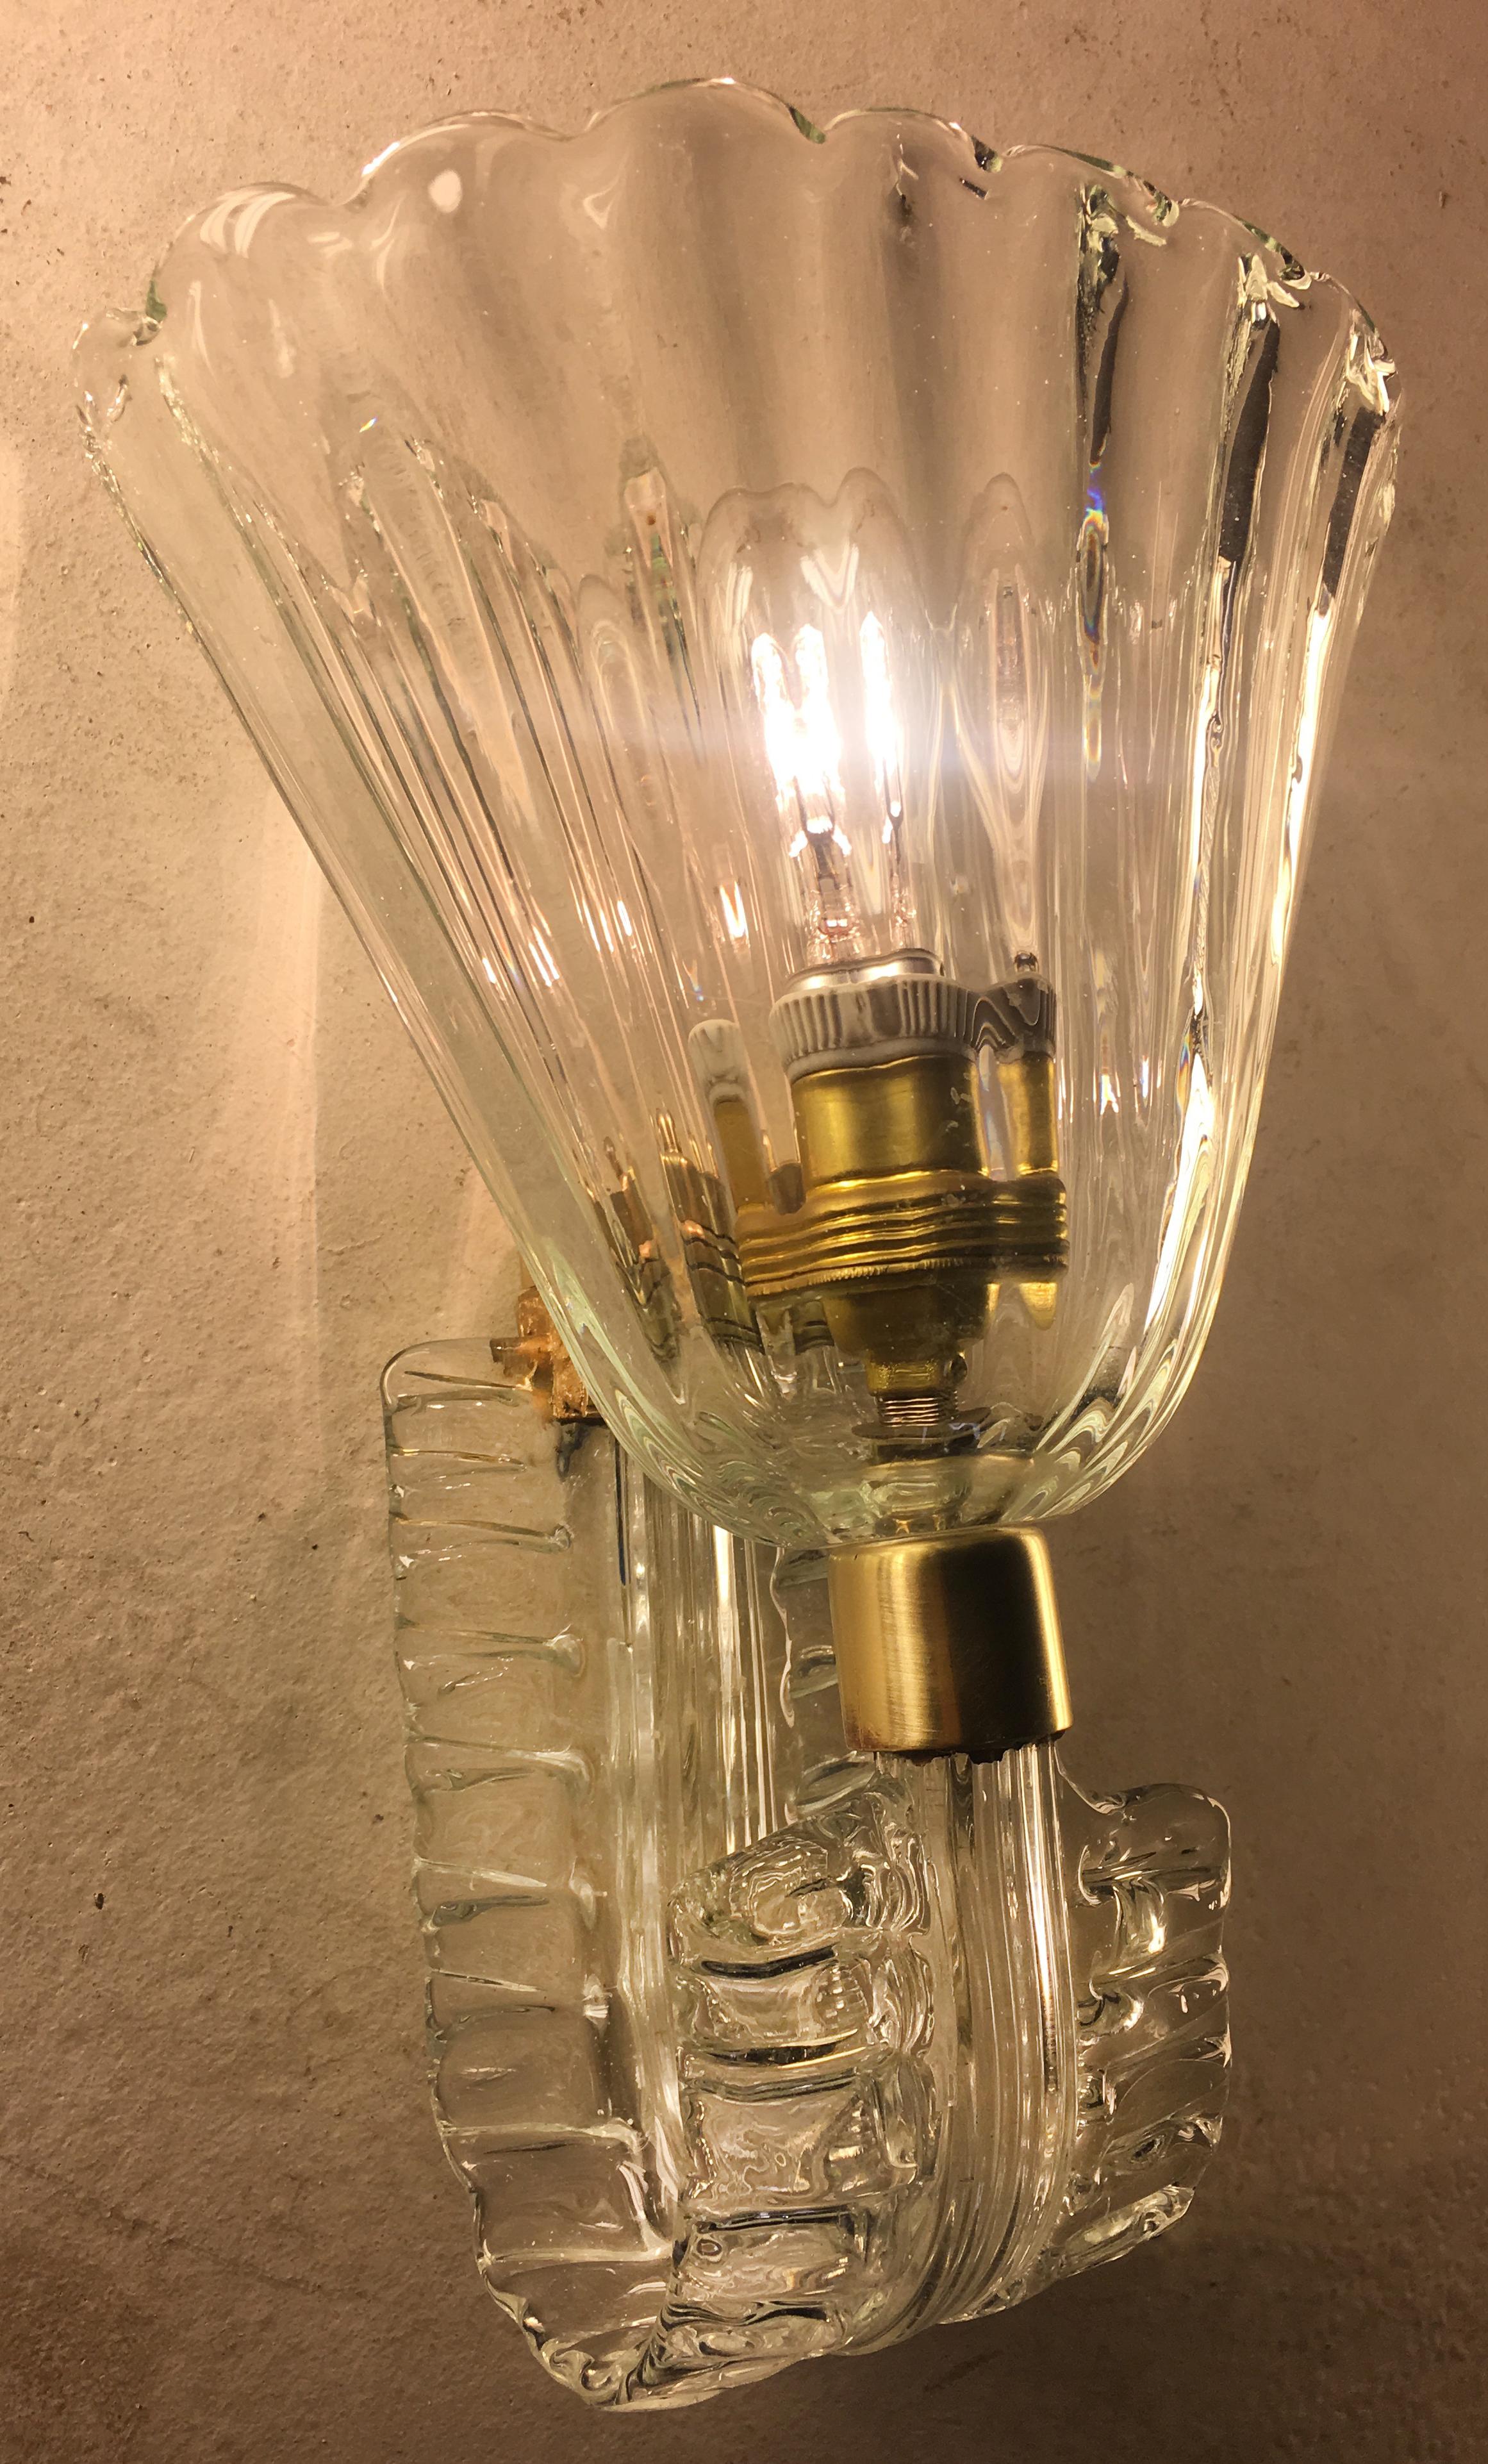 Un ensemble spectaculaire de quatre appliques en verre doré Barovier & Toso. Chaque applique est dotée d'une lumière et d'une ferrure en laiton.